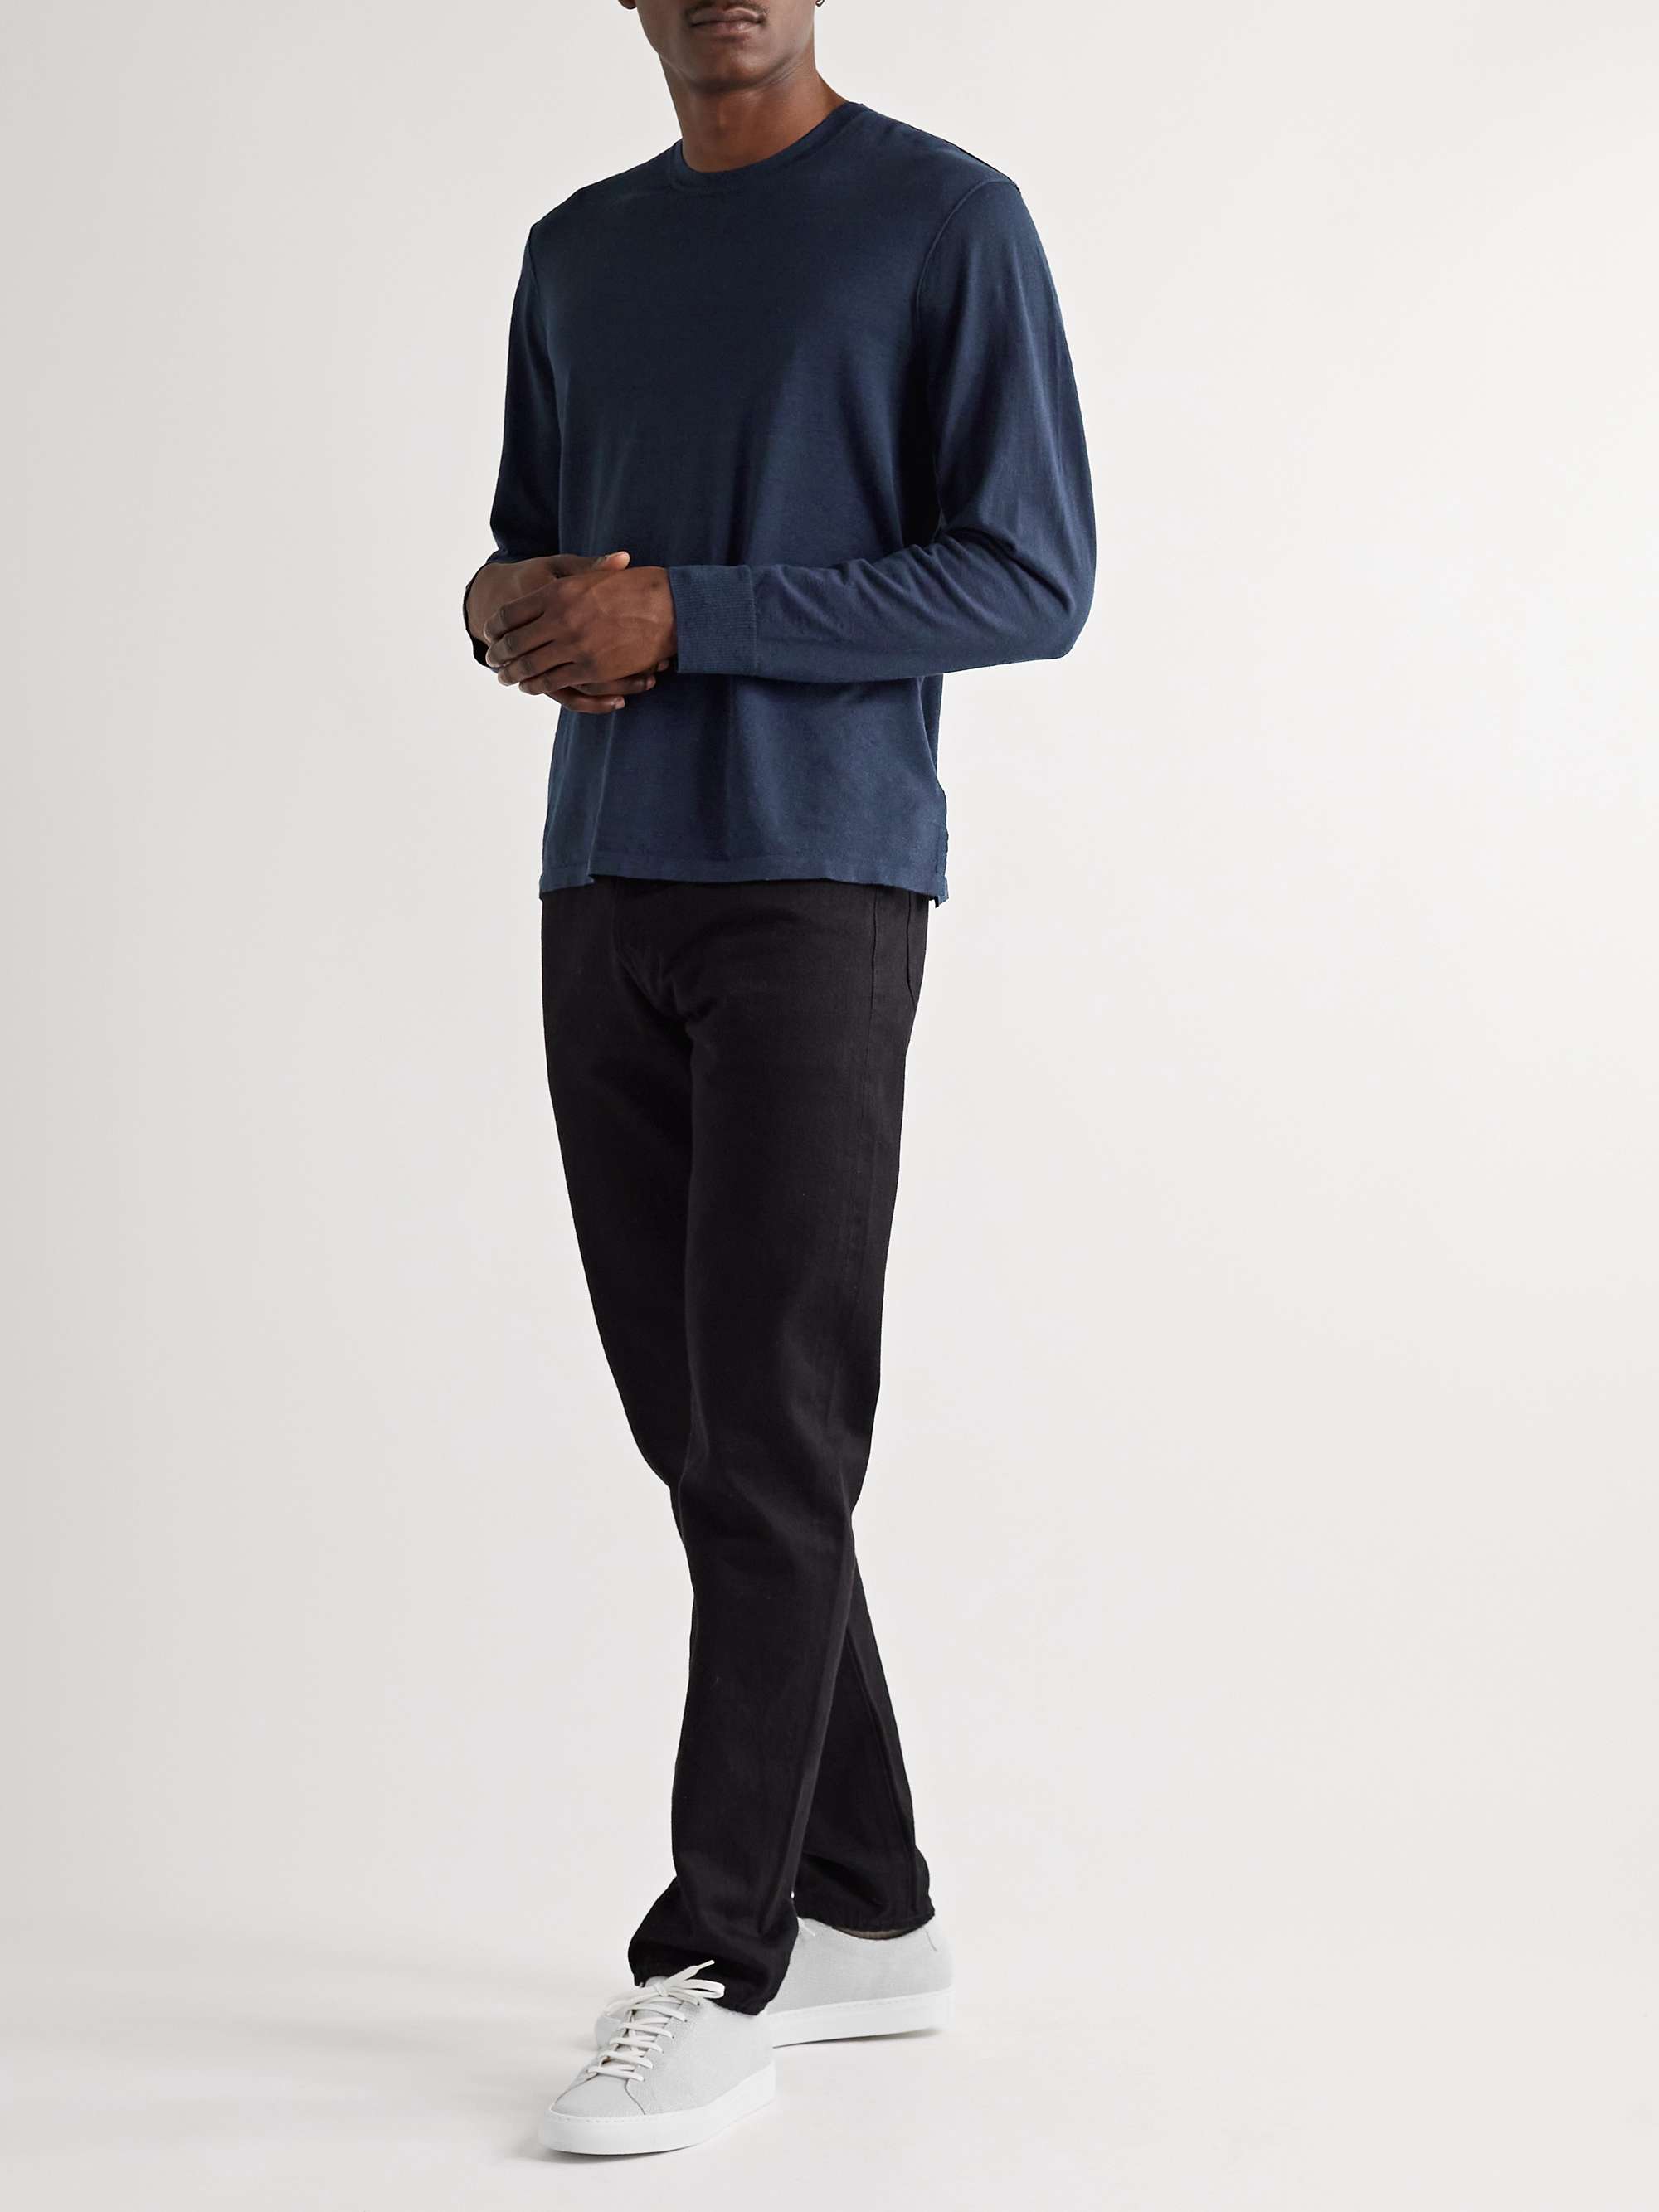 Navy Linen-Blend Sweater | JAMES PERSE | MR PORTER